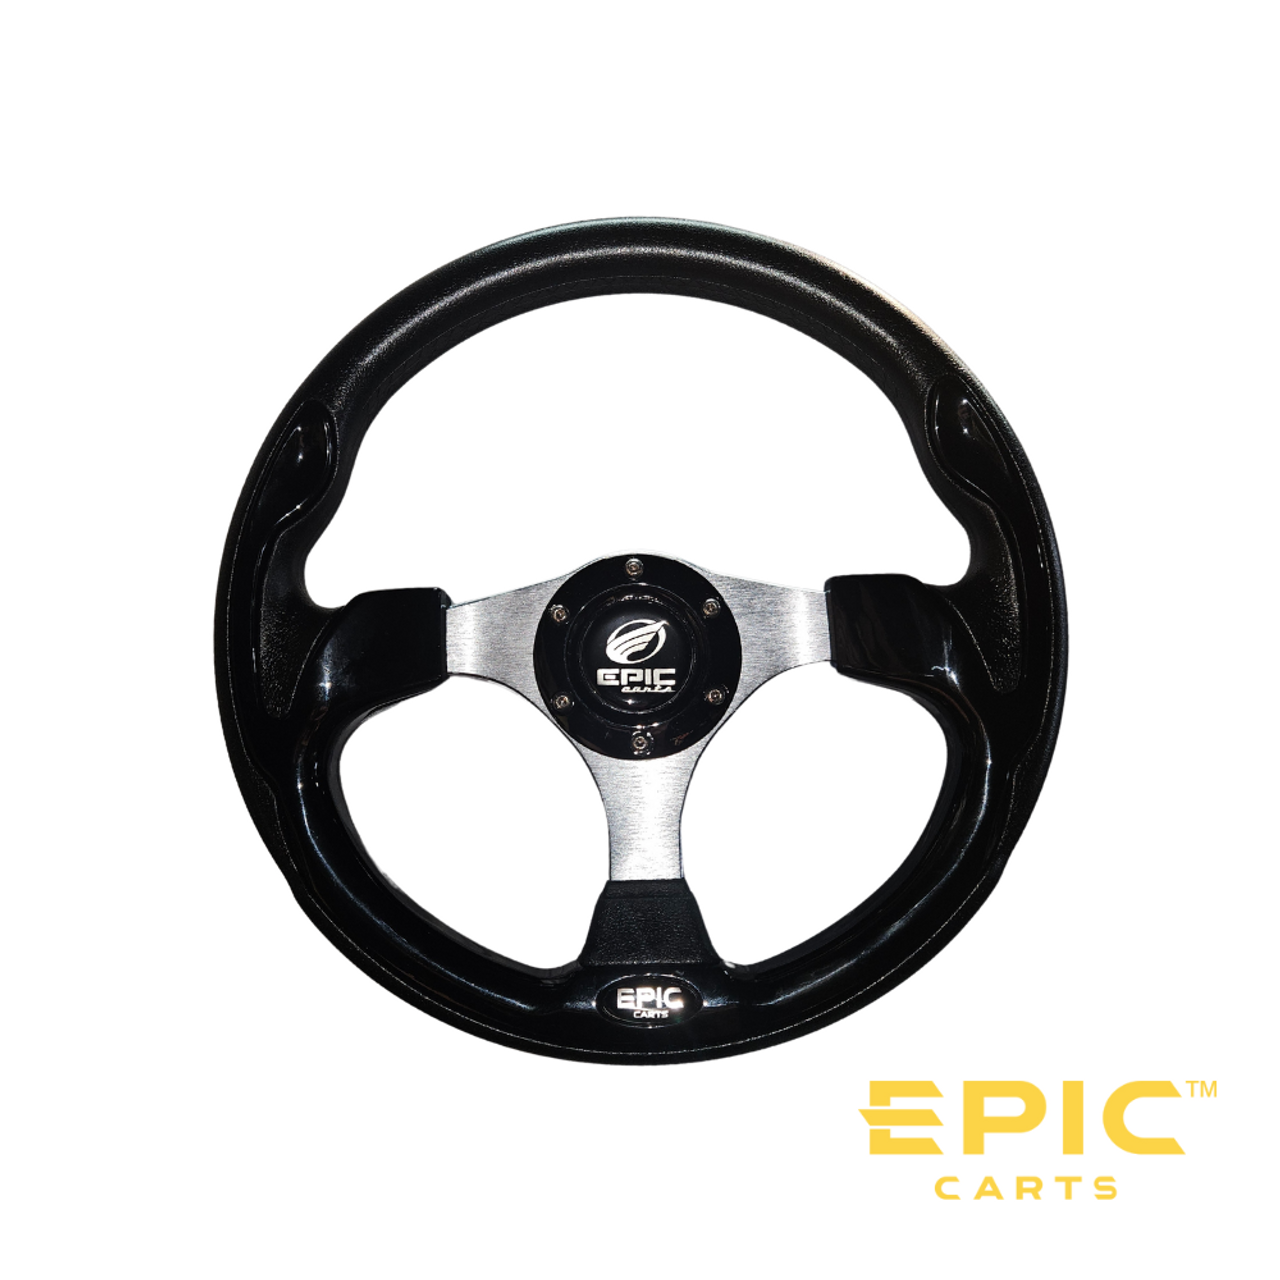 Steering Wheel for EPIC Golf Cart, SR-EP623, 3101050001